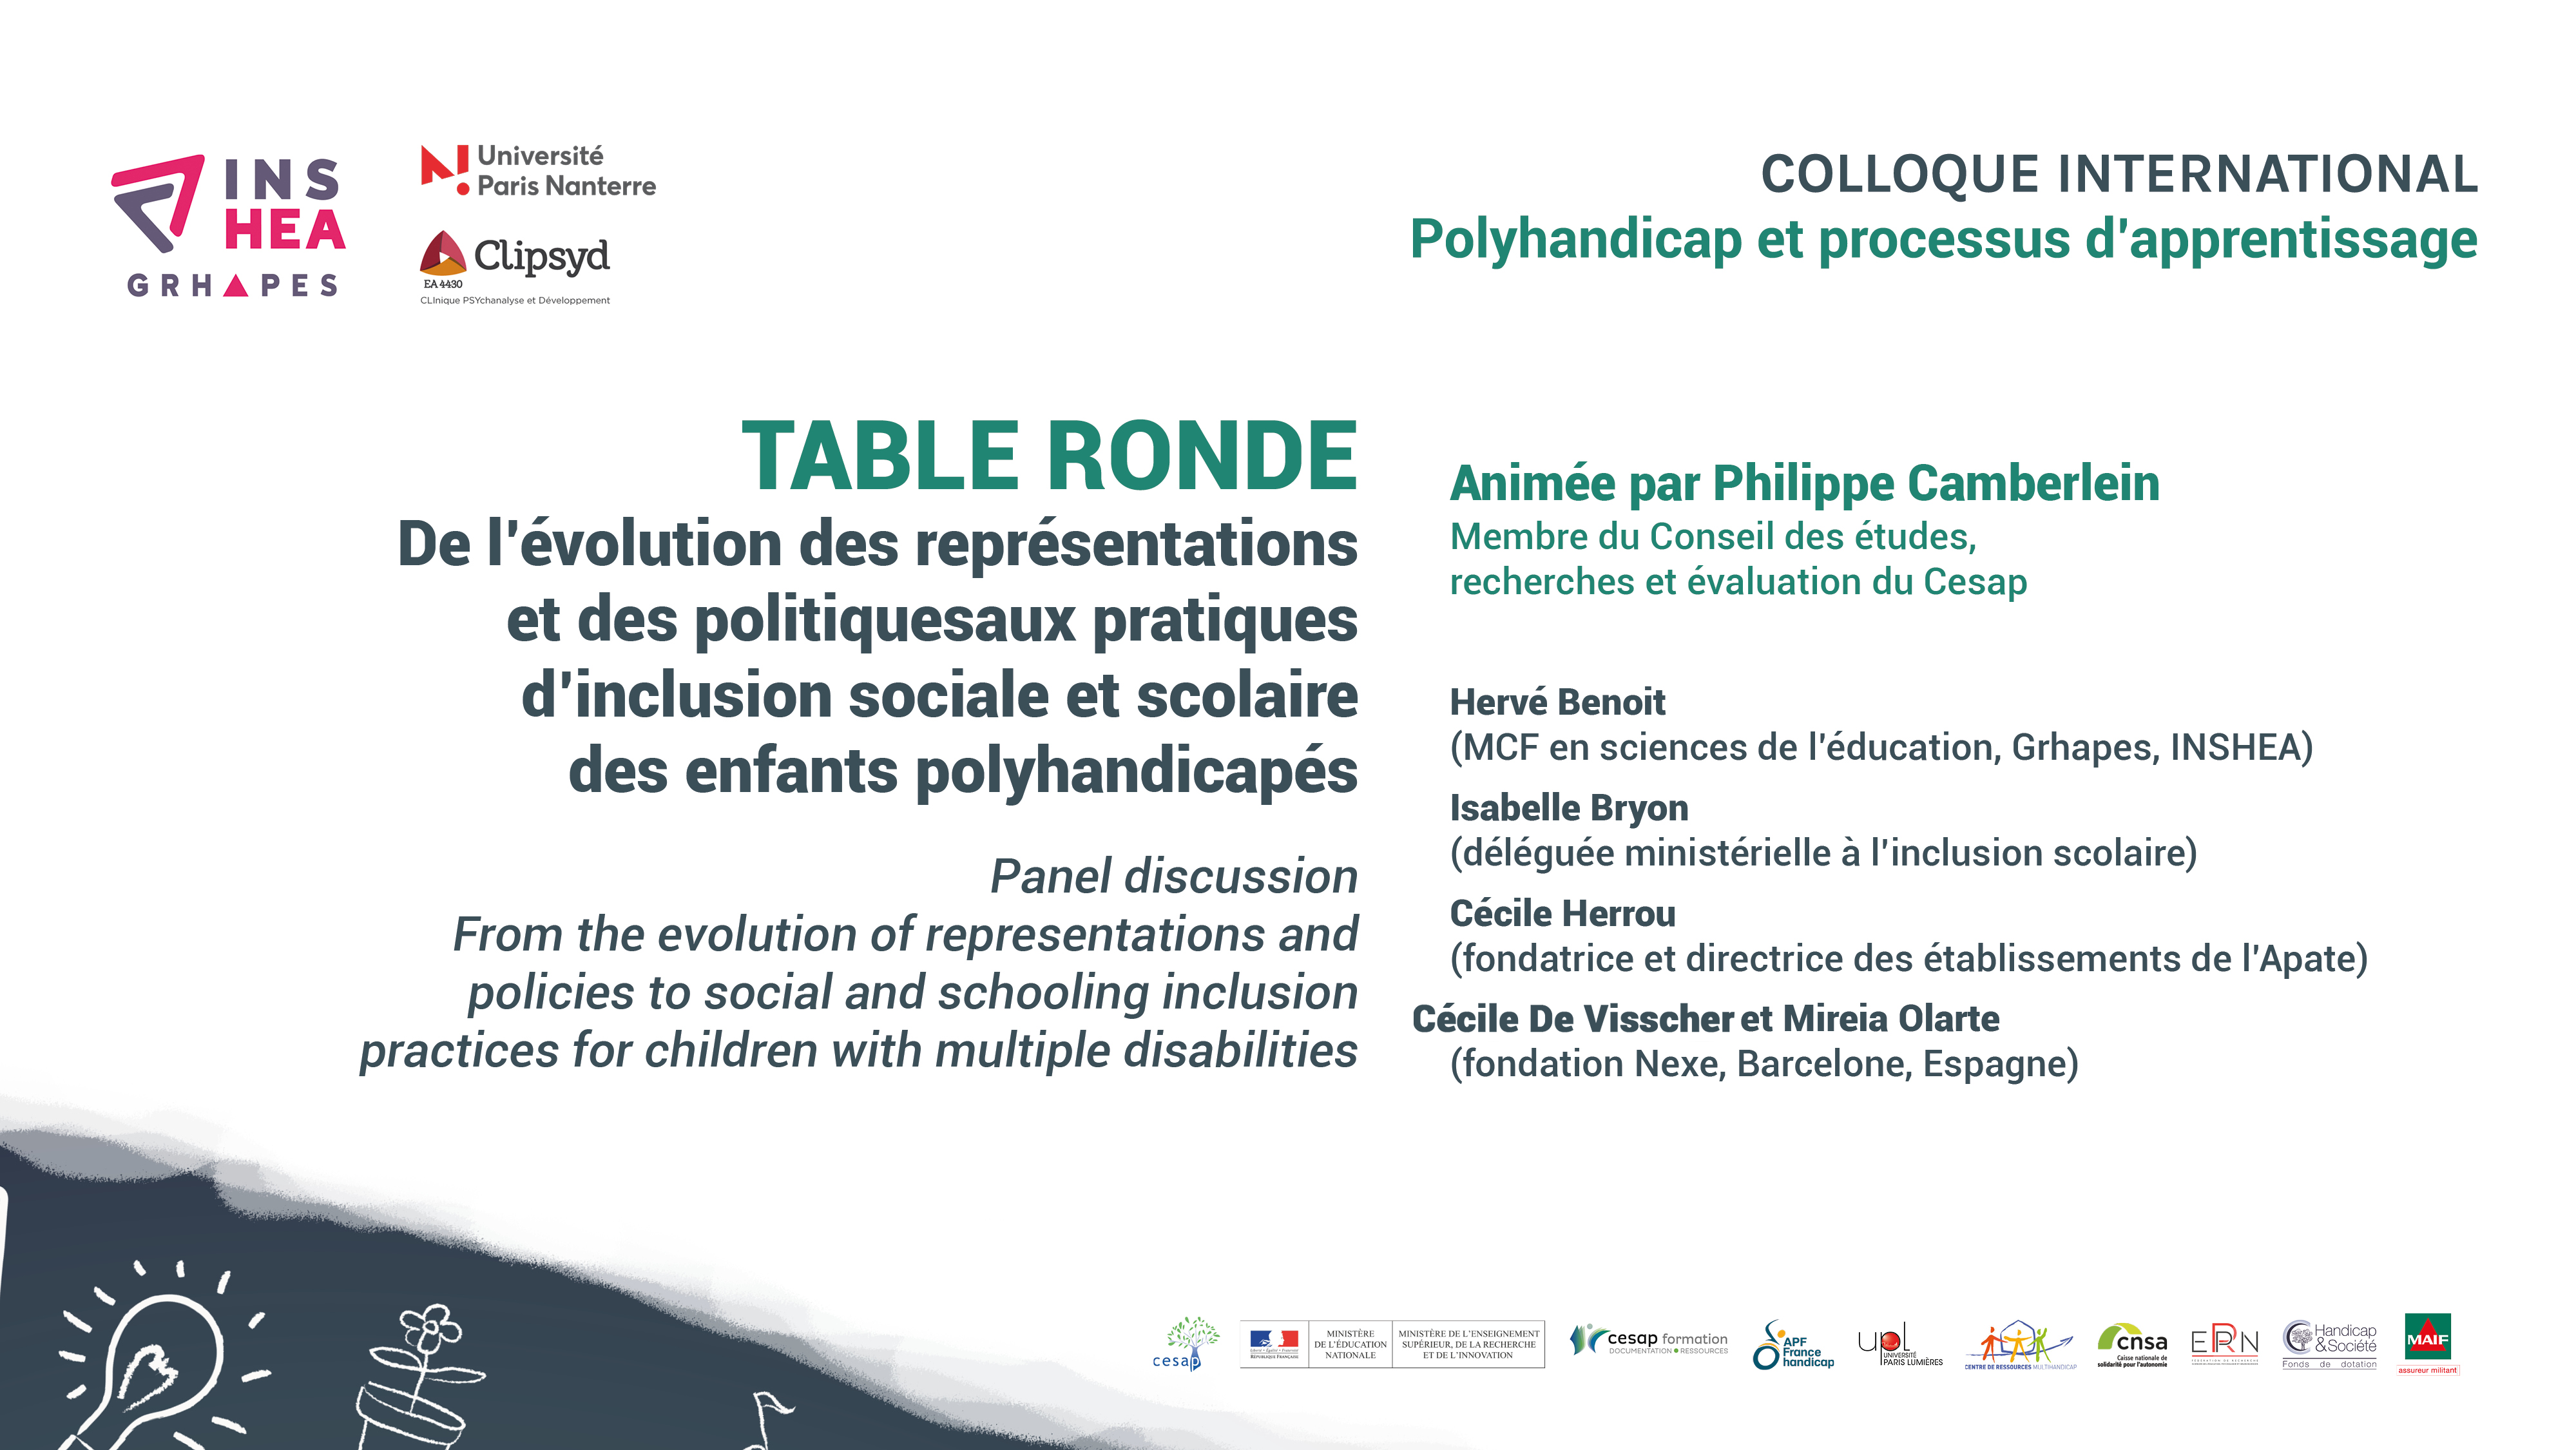 Colloque POLYHANDICAP Table ronde : Hervé BENOIT - Isabelle BRYON - Cécile HERROU - Cécile DE VISSCHER et Mireia OLARTE